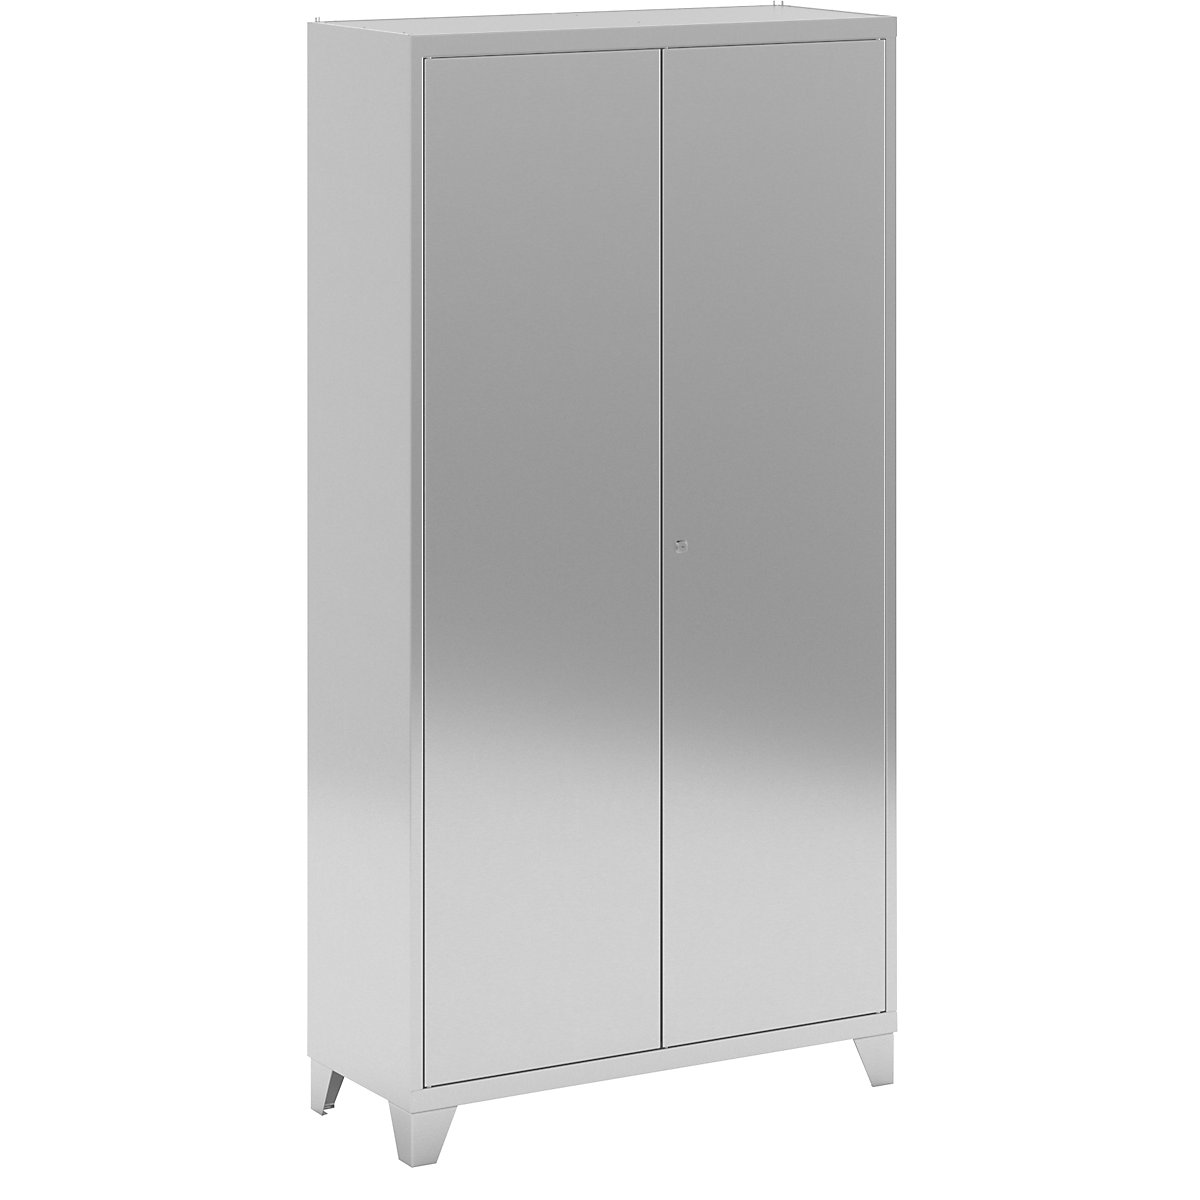 Stainless steel double door cupboard with stud feet